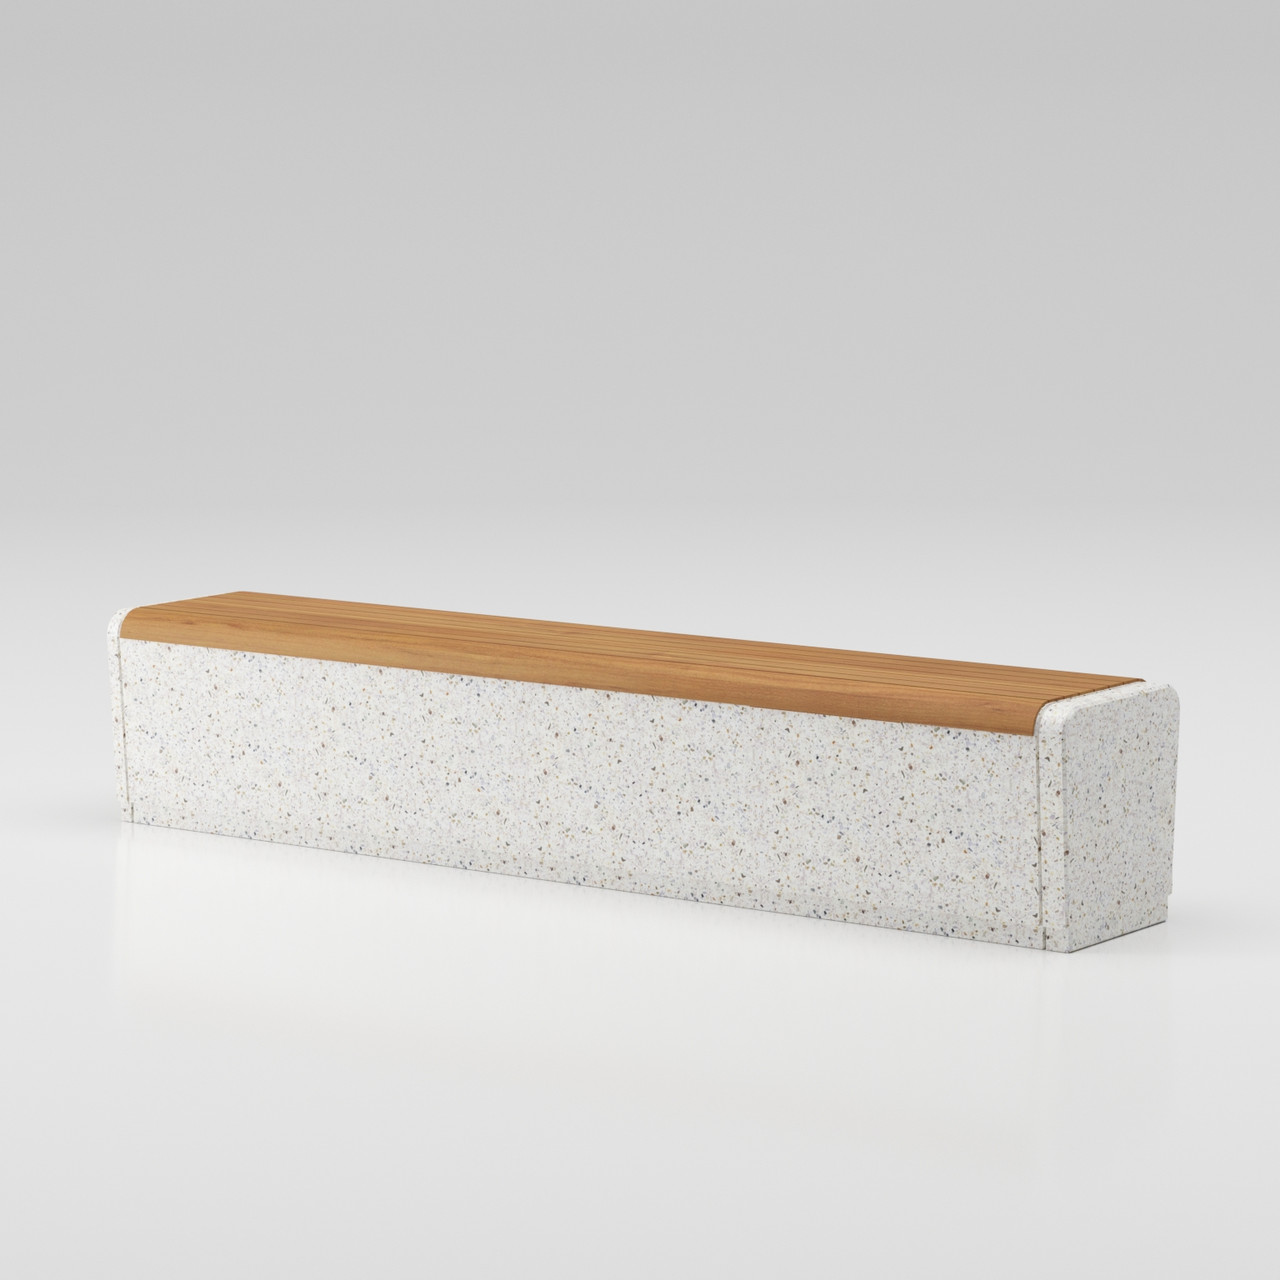 Скамейка из композитного мраморного камня с деревянным настилом Onda bench C3